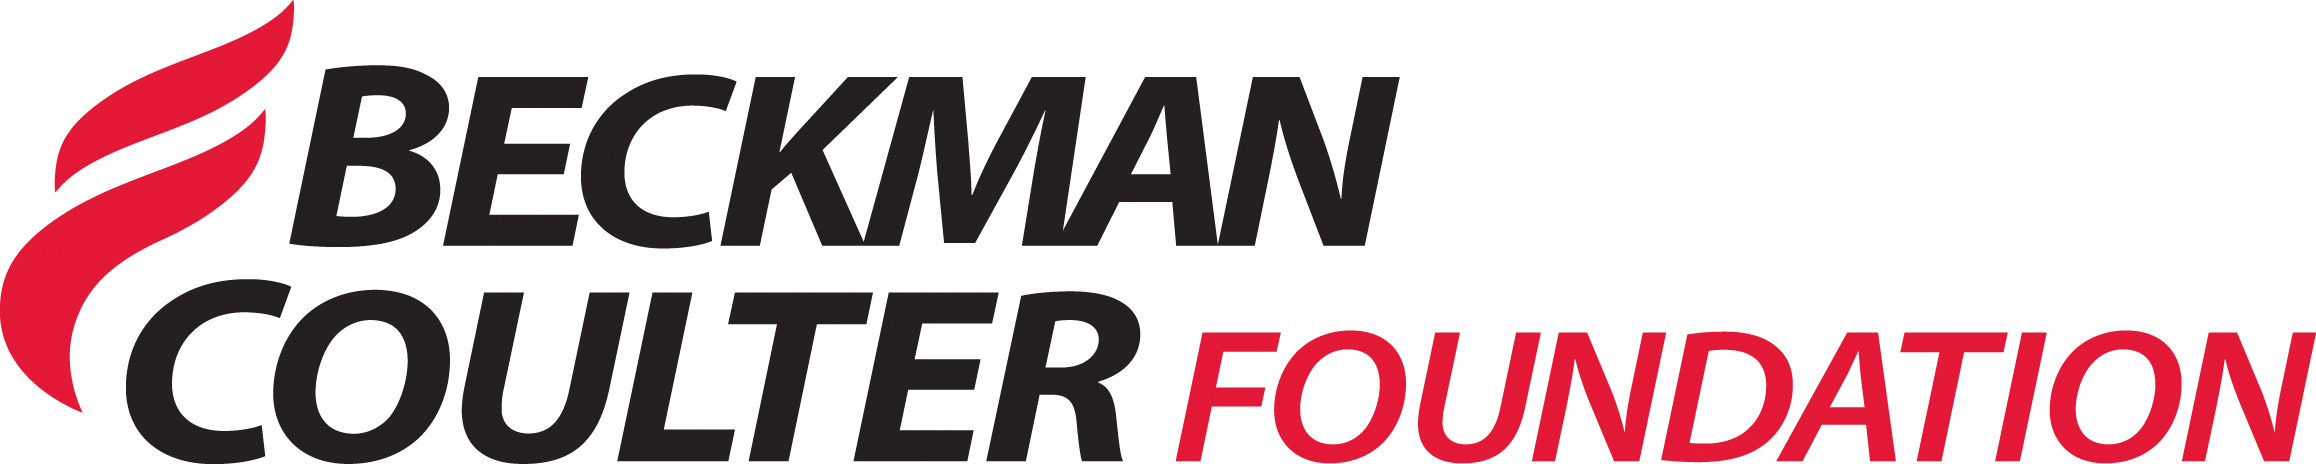 Beckman Coulter Foundation - Bike MS Partner